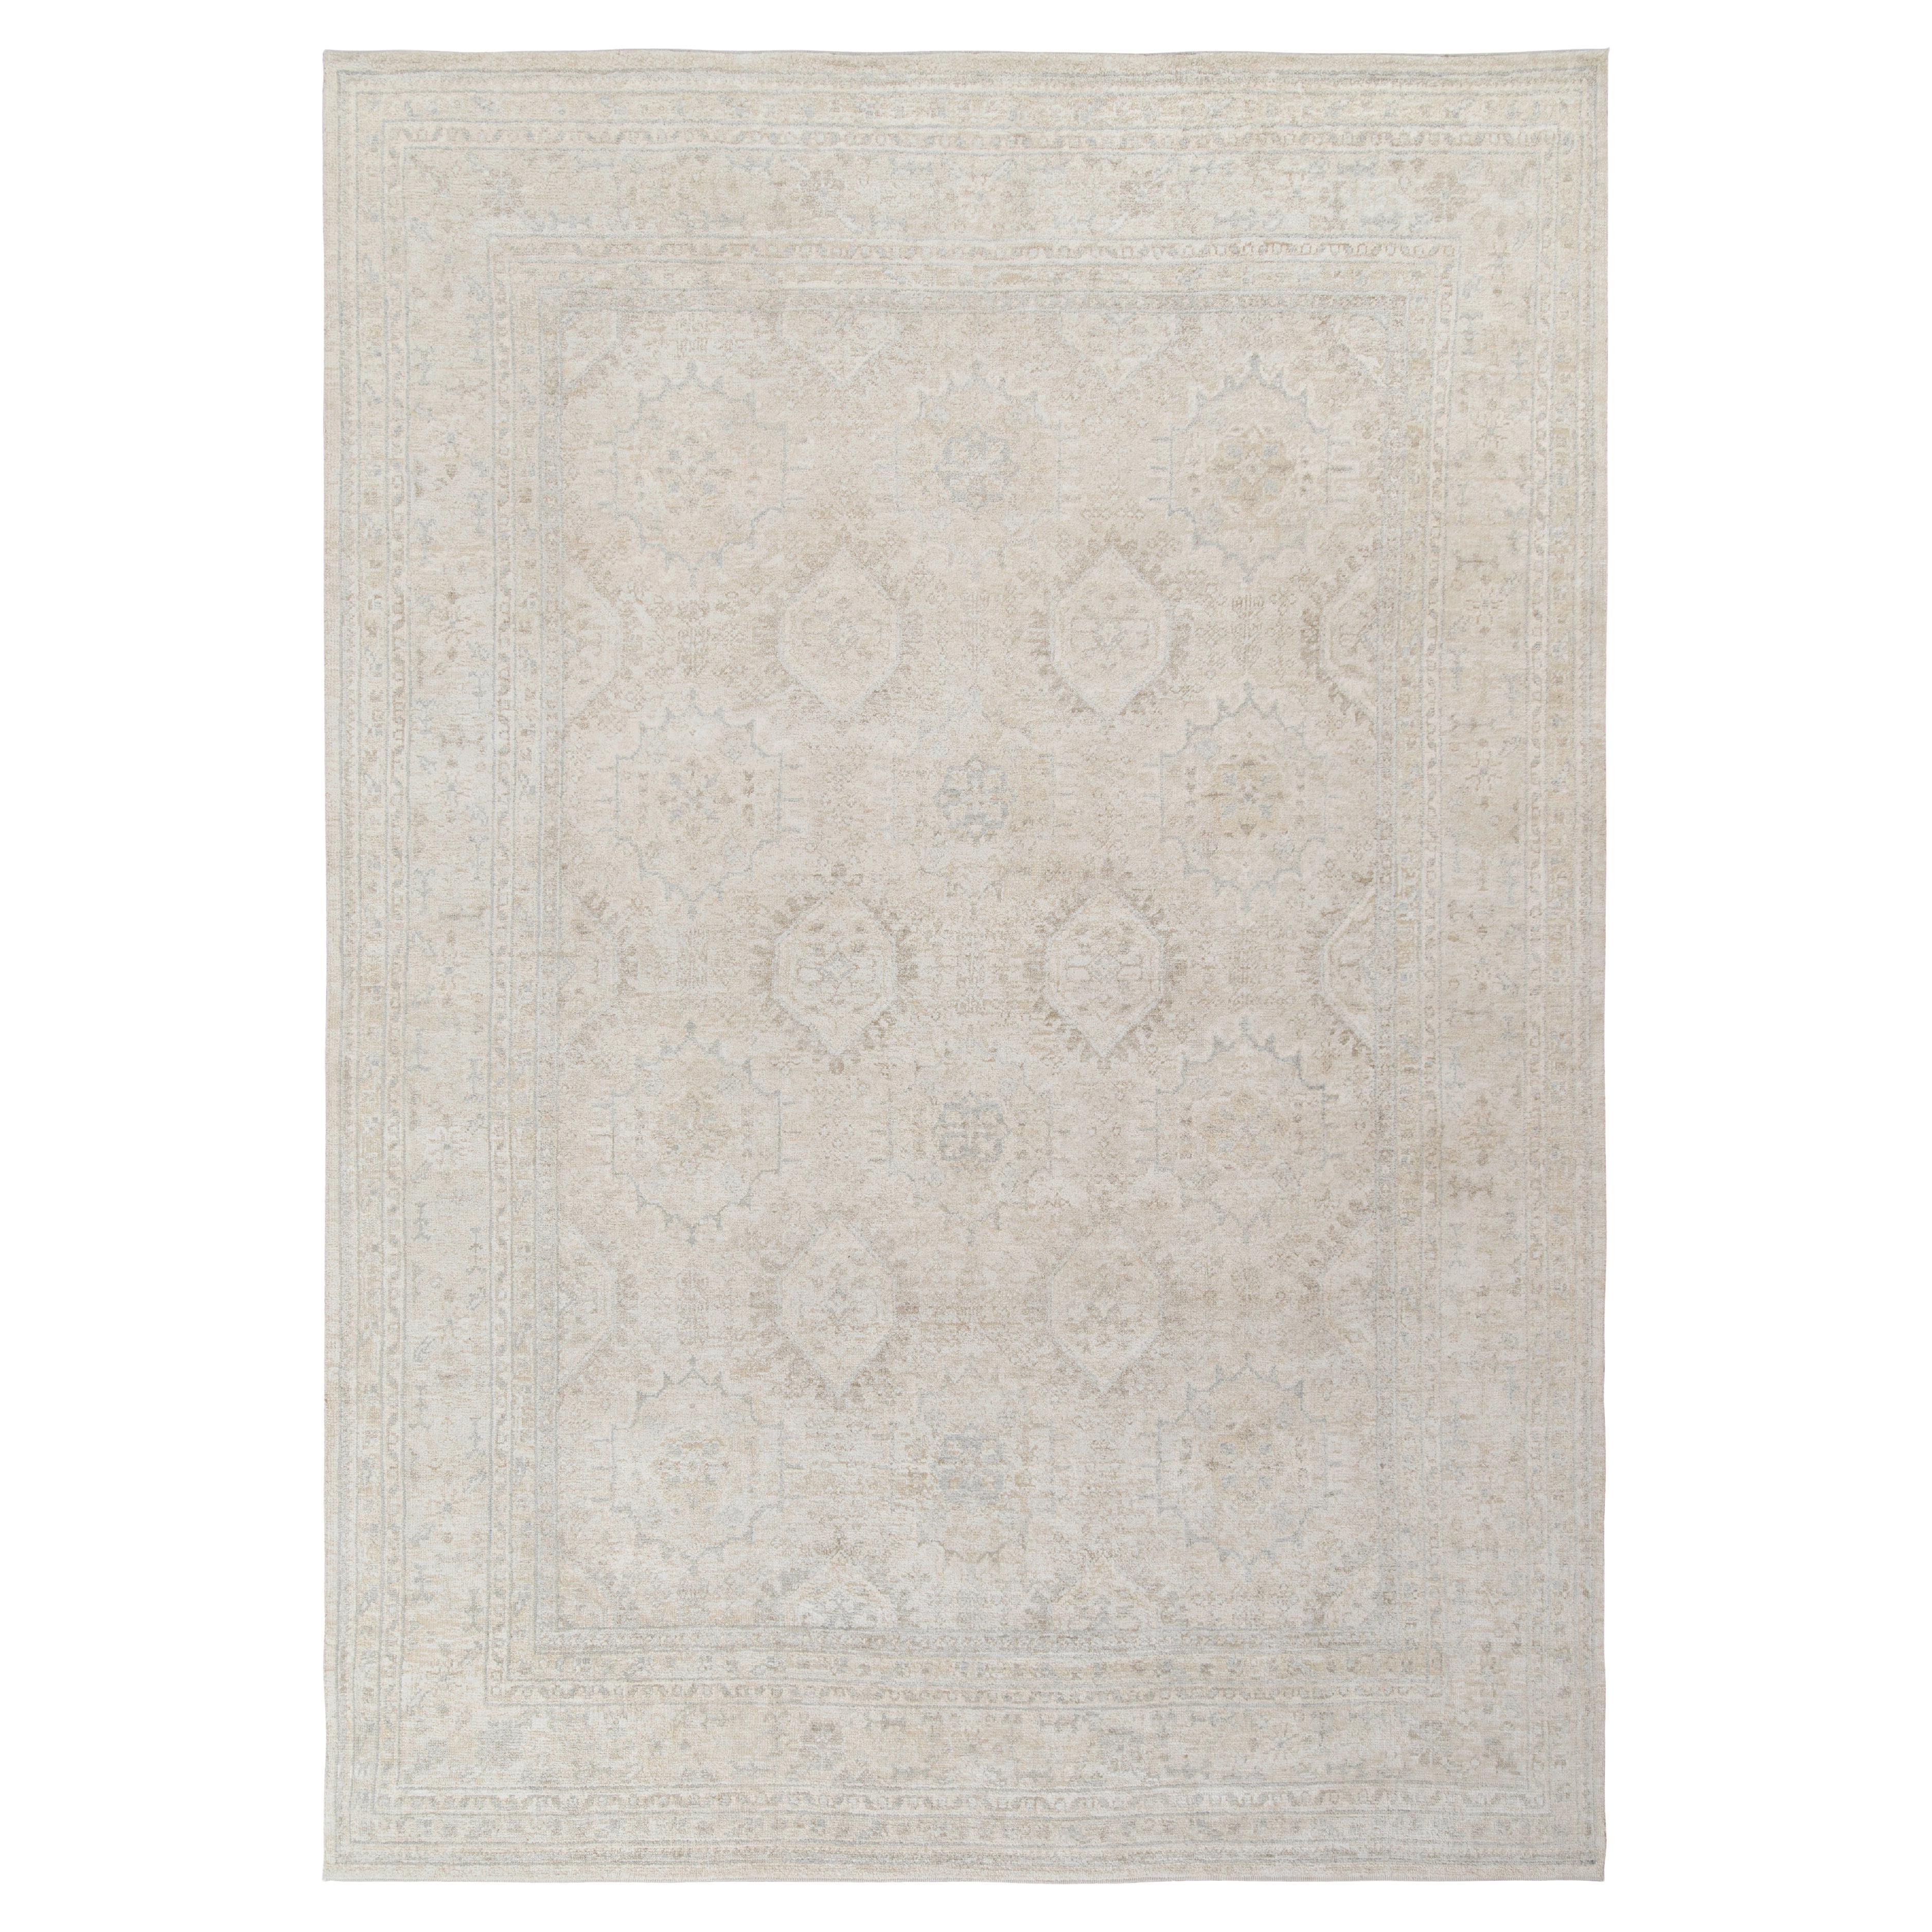 Klassischer Teppich & Kilims, maßgefertigter Teppich in Allover-Blau, Beige-Grau mit geometrischem Muster